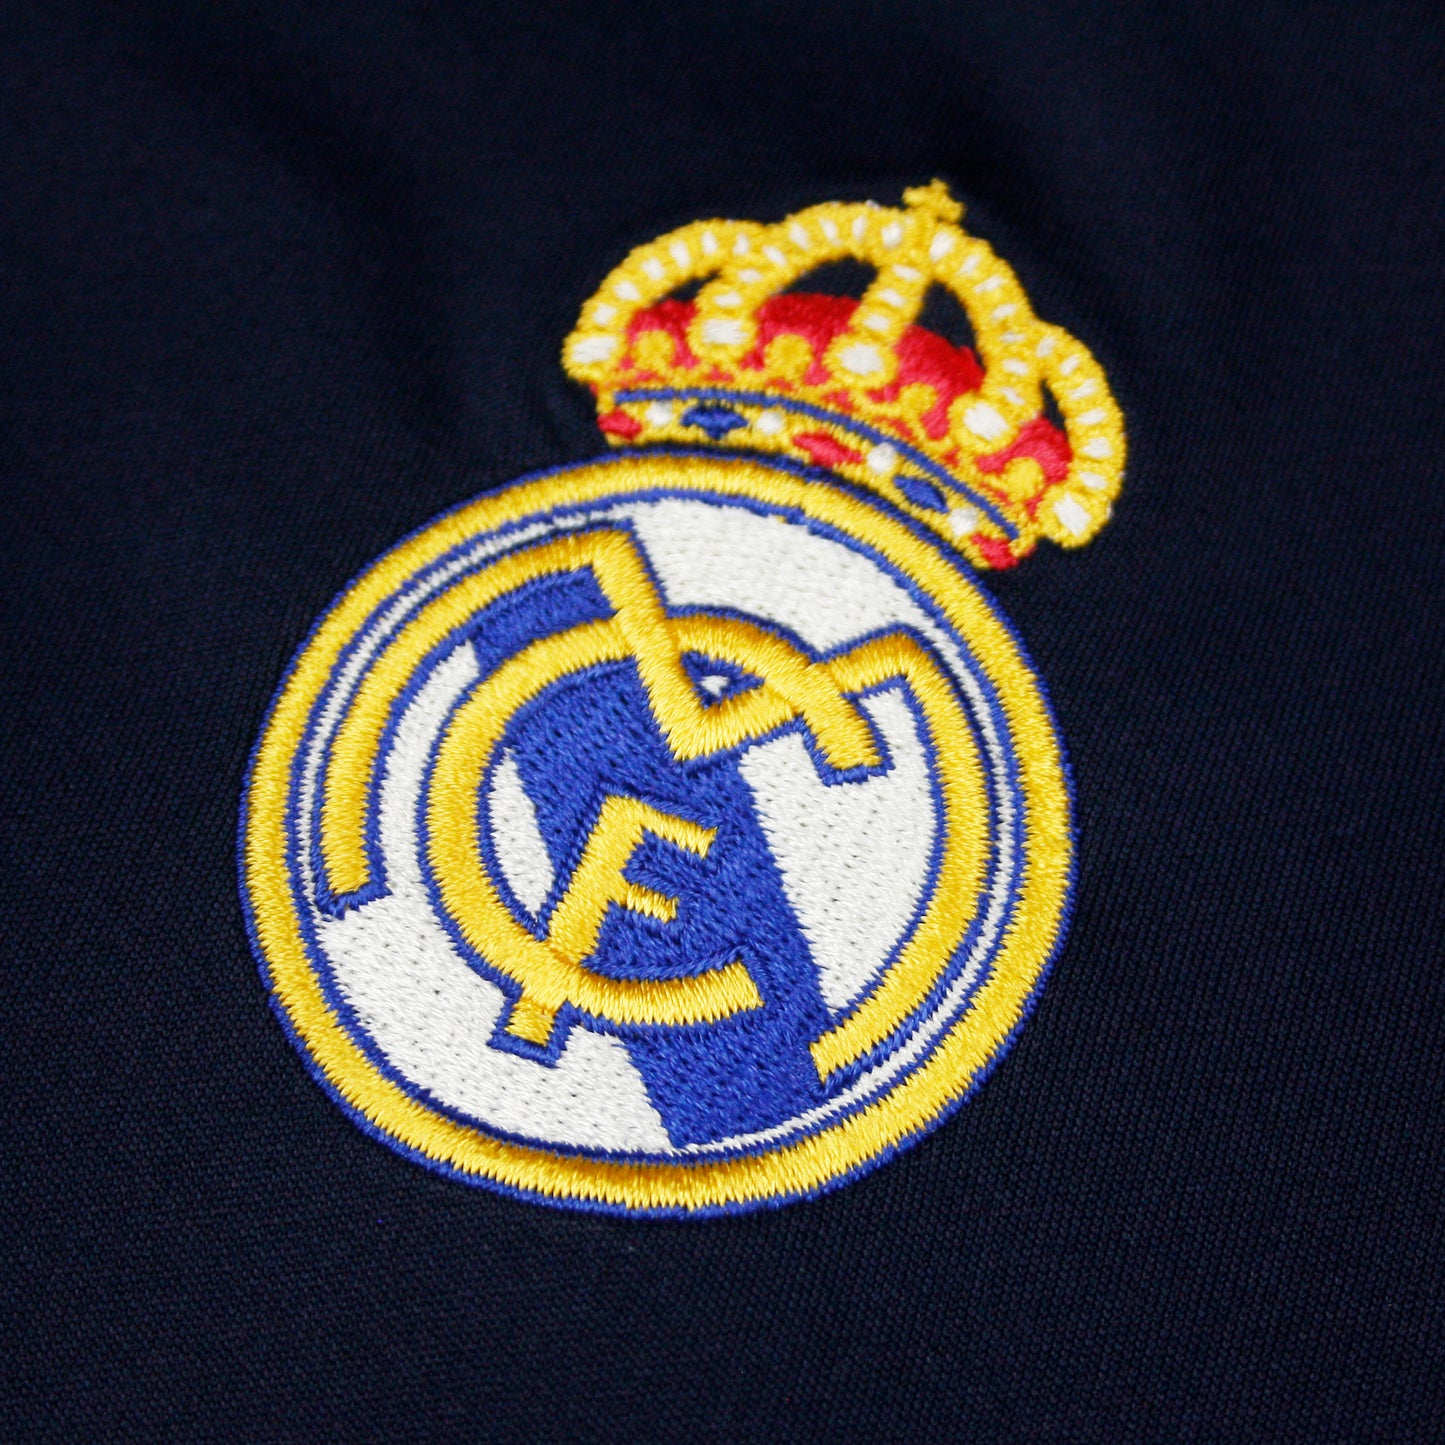 Real Madrid 07/08 • Camiseta Visitante • M